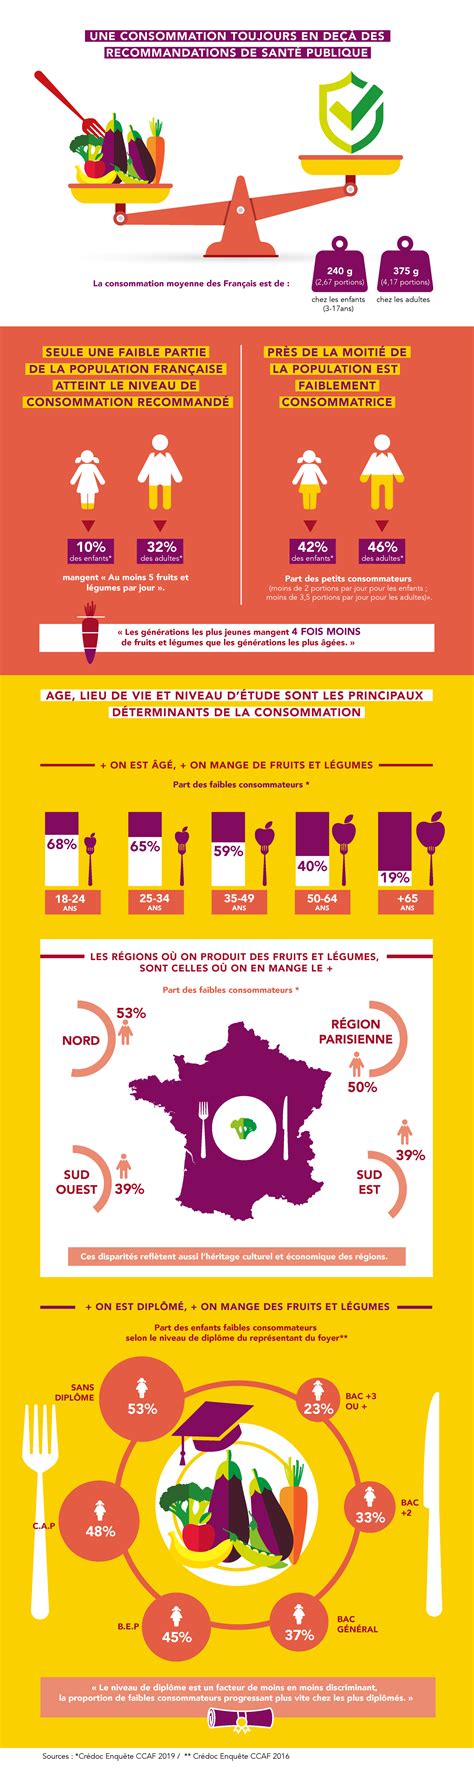 Consommation De Fruits Et L Gumes En France